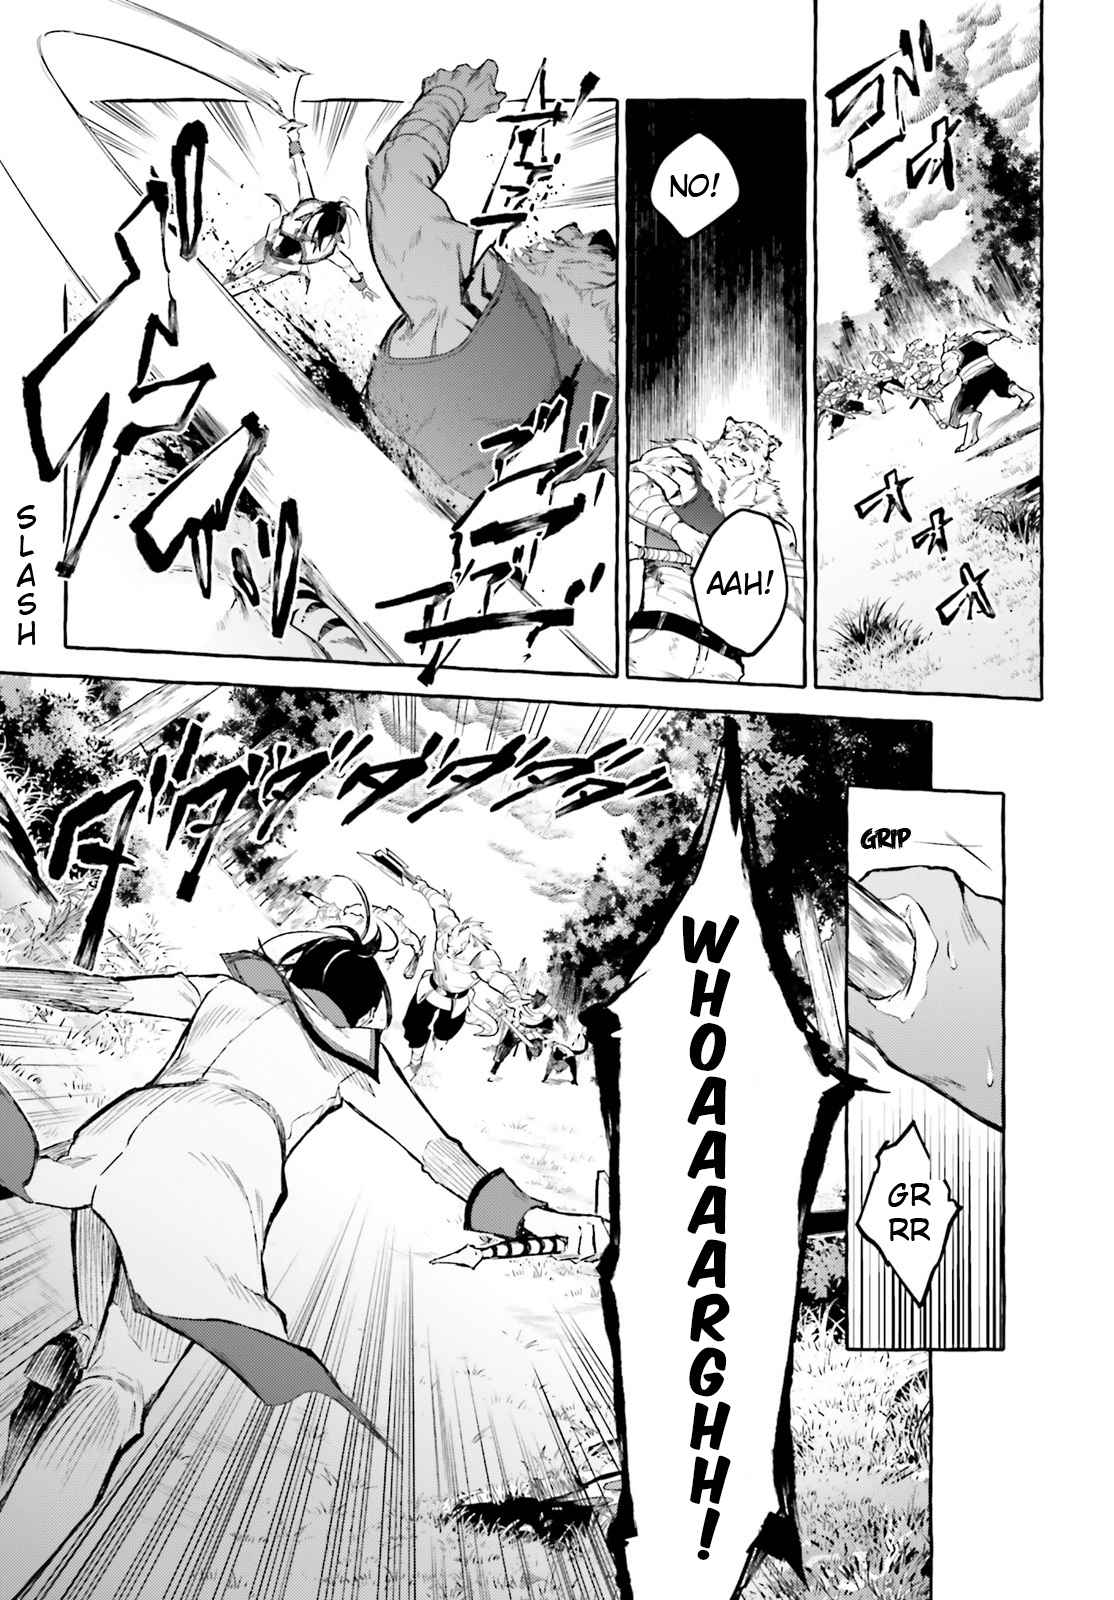 Re: Zero Kara Hajimeru Isekai Seikatsu Kenki Koiuta Vol. 2 Ch. 7 The Battle Intensifies